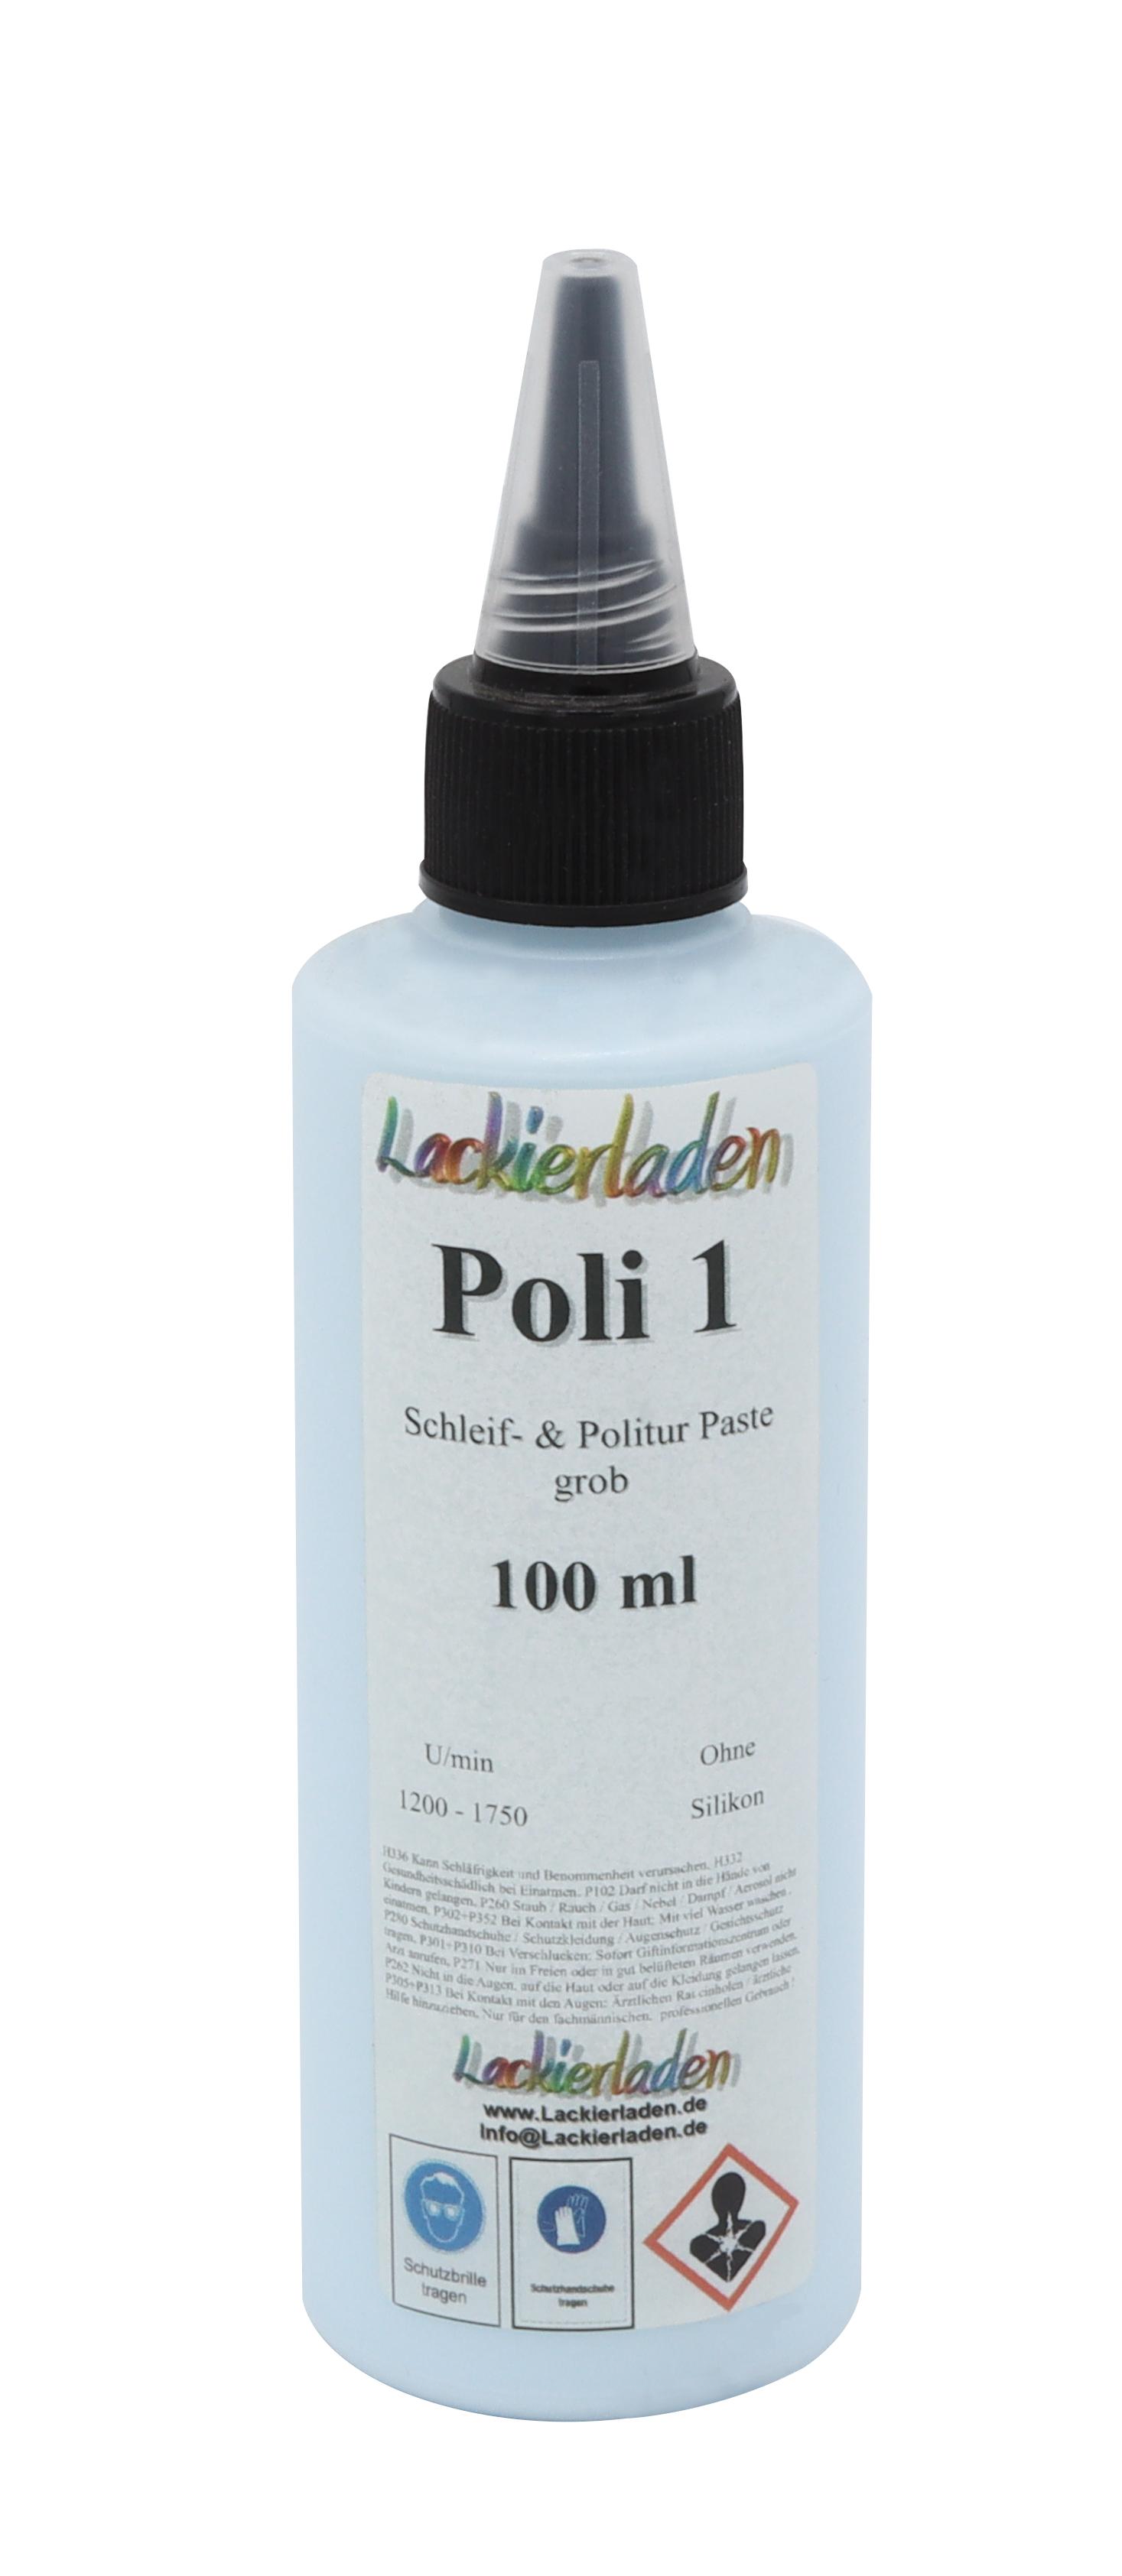 Poli 1 Schleif- & Politur Paste grob 100 ml | Polierpaste Schleifpaste polieren